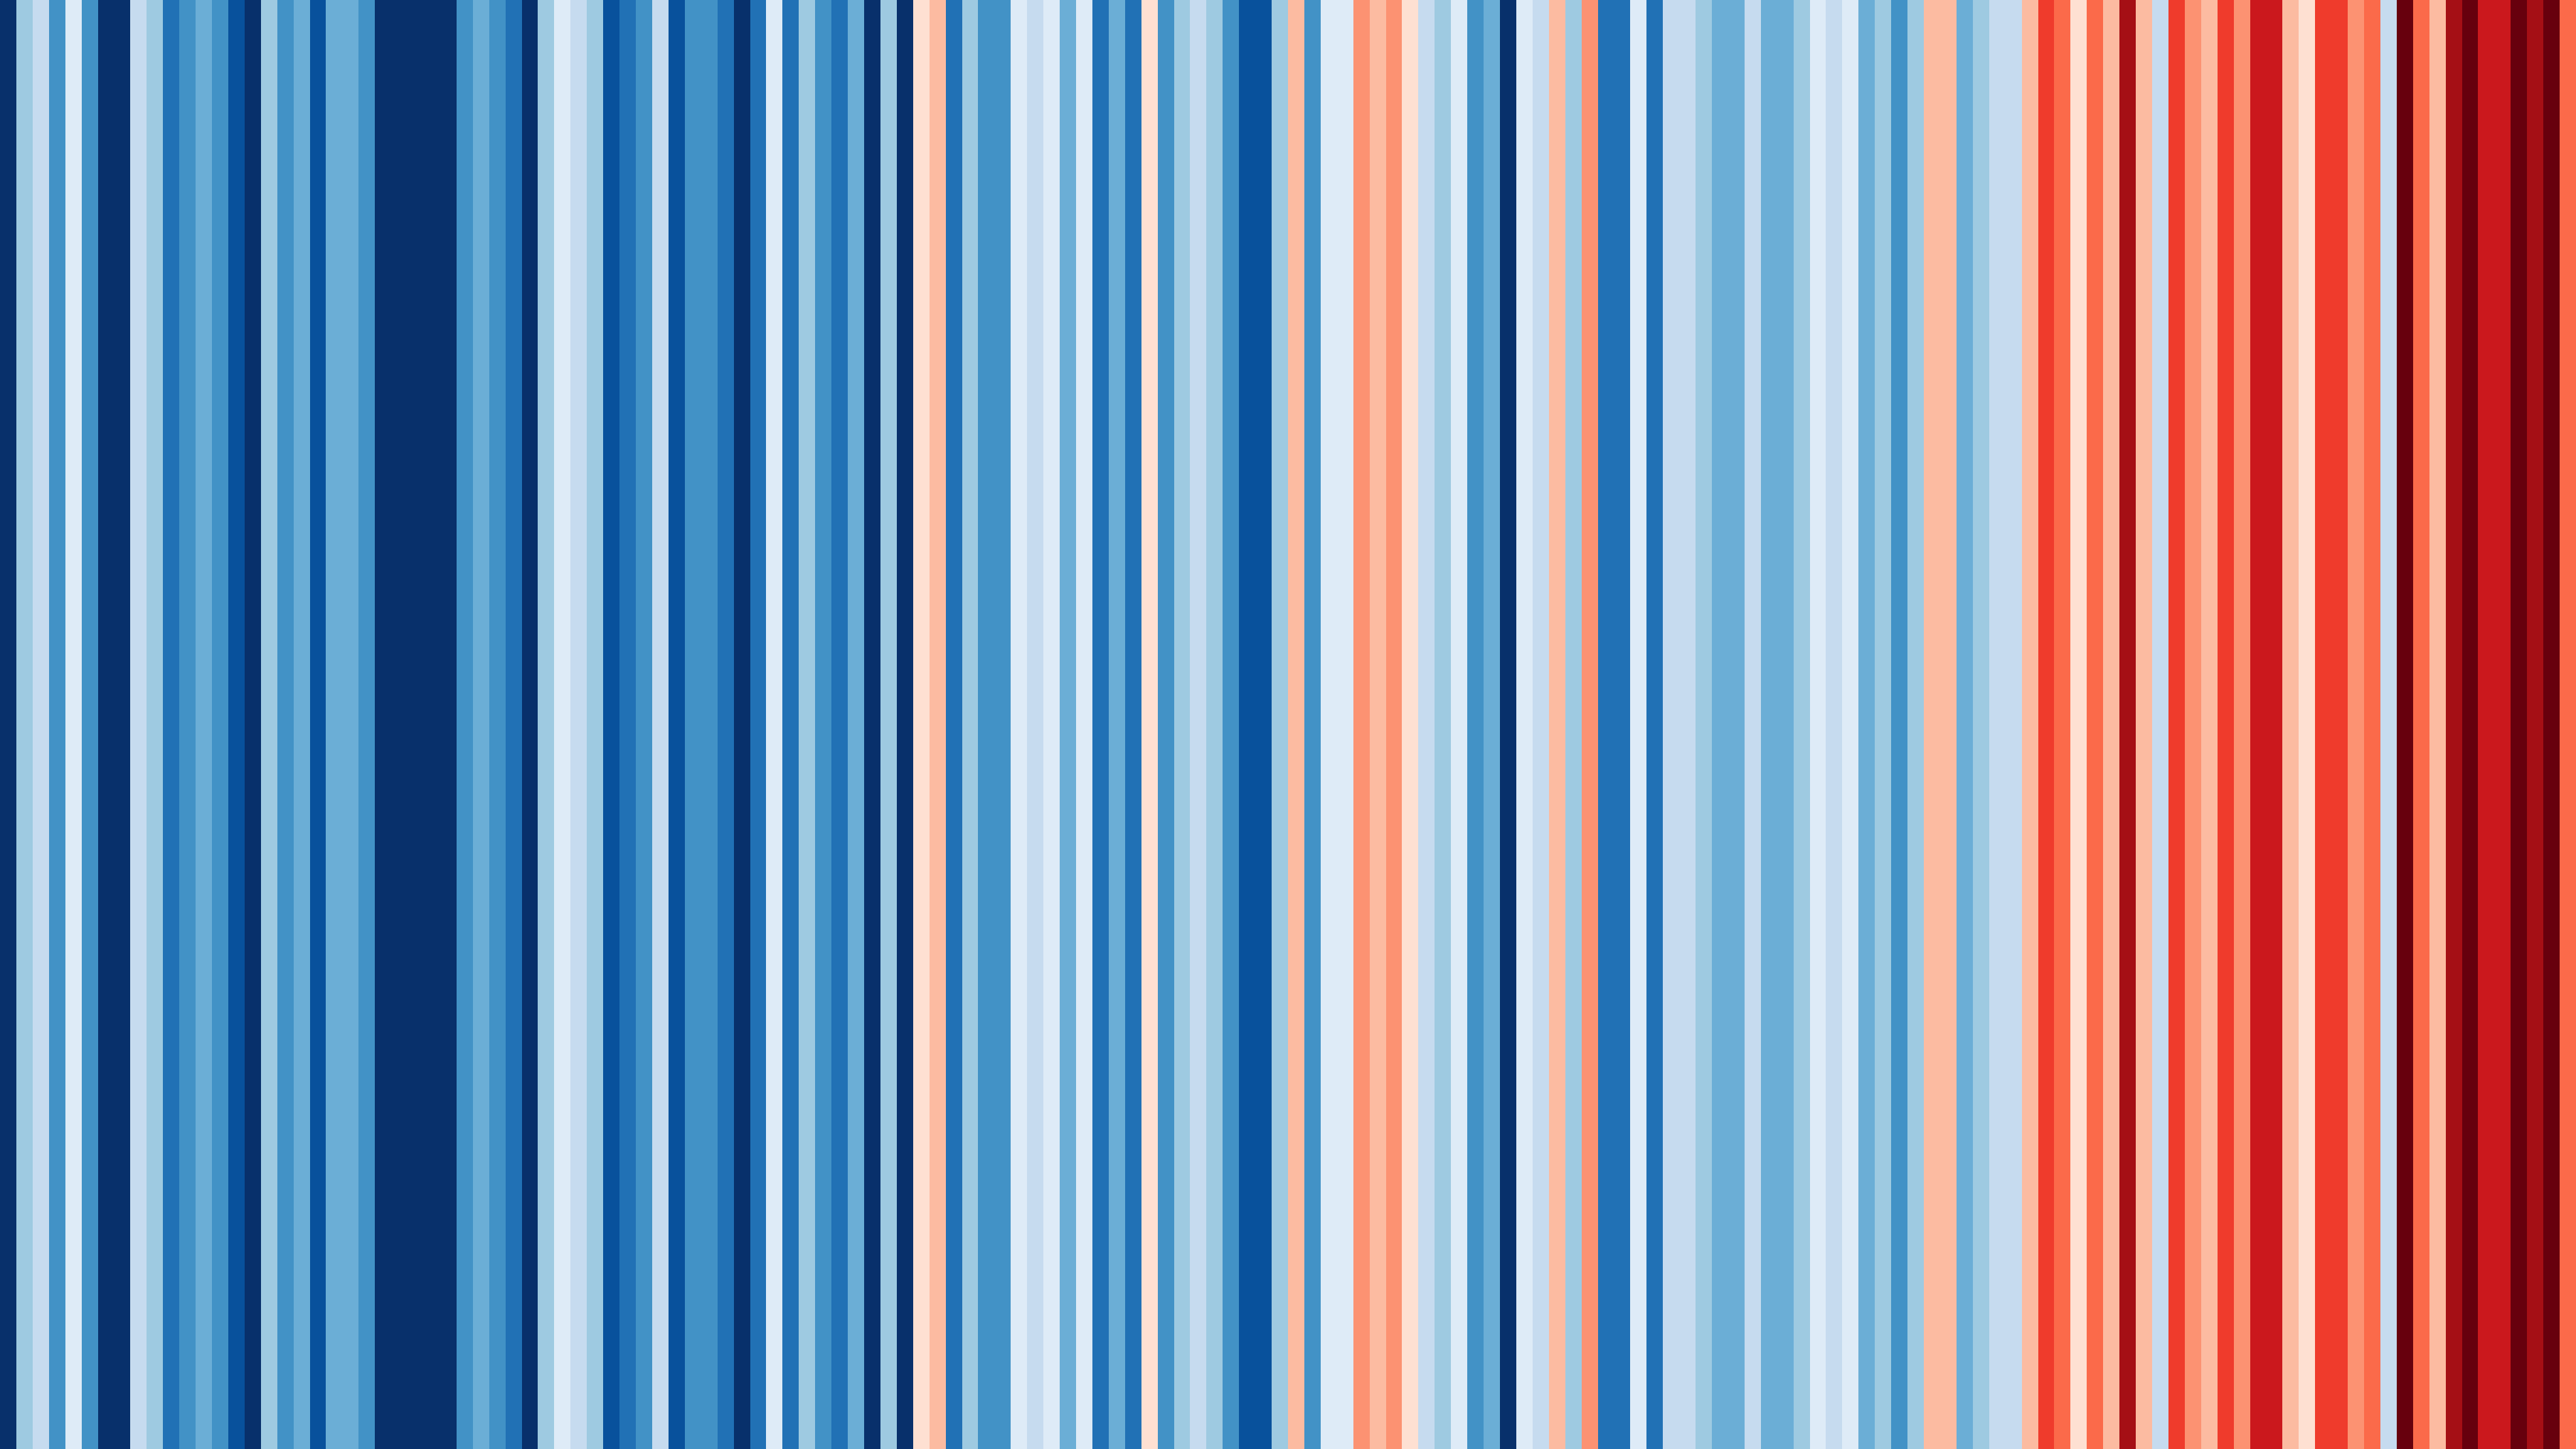 Jahresdurchschnittstemperaturen in der Schweiz, 1884 - 2021. Ed Hawkins, CC-BY 4.0